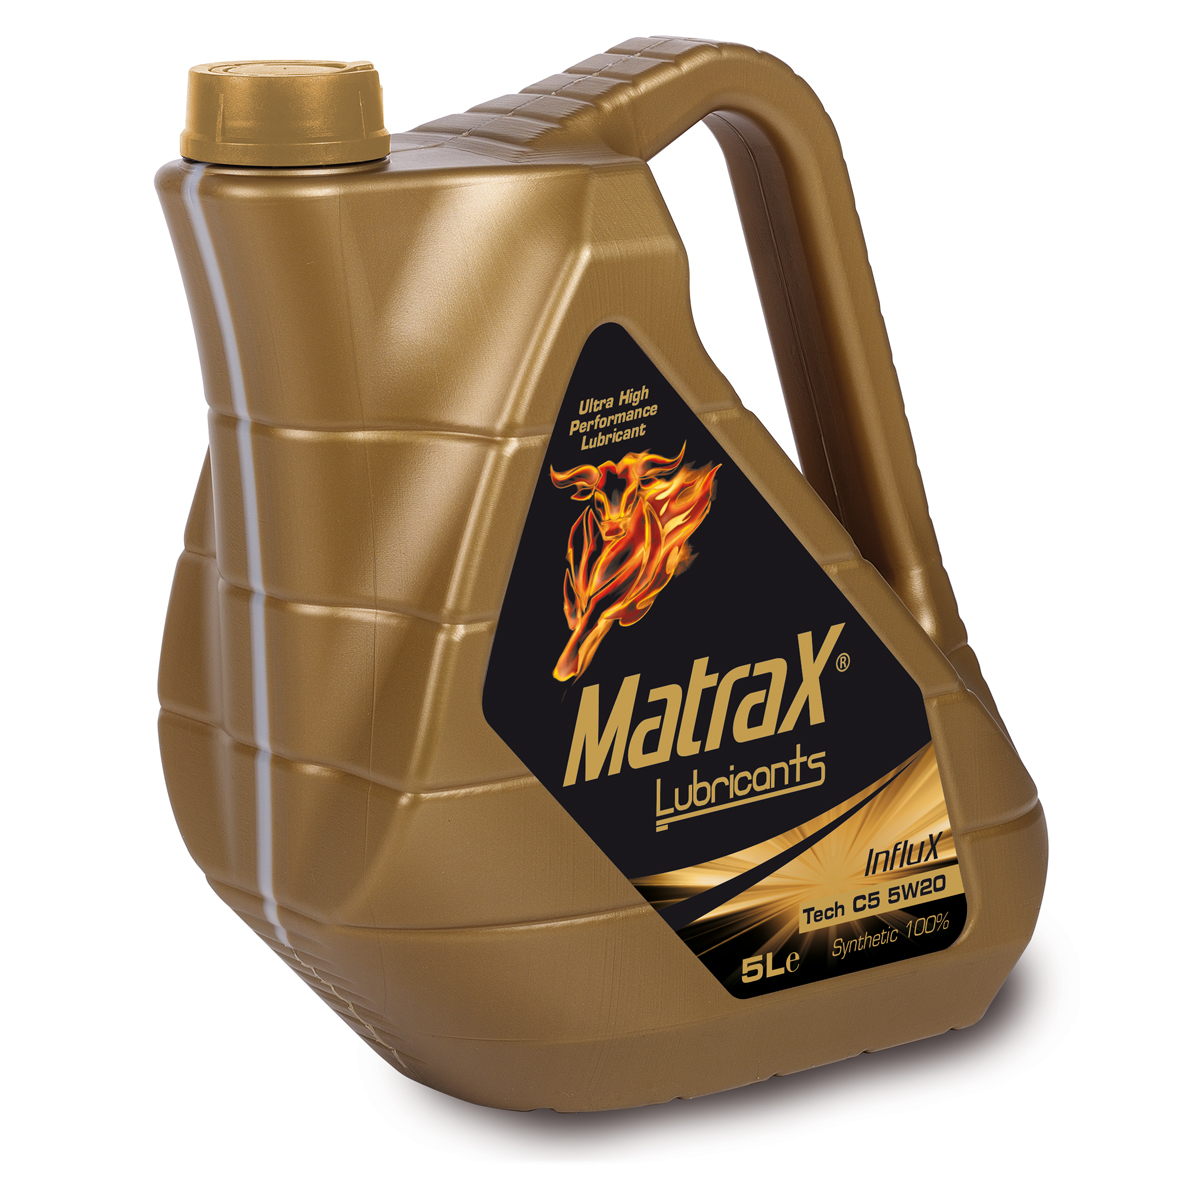 matrax-lubricants-influx-Tech-C5-5w20-5l